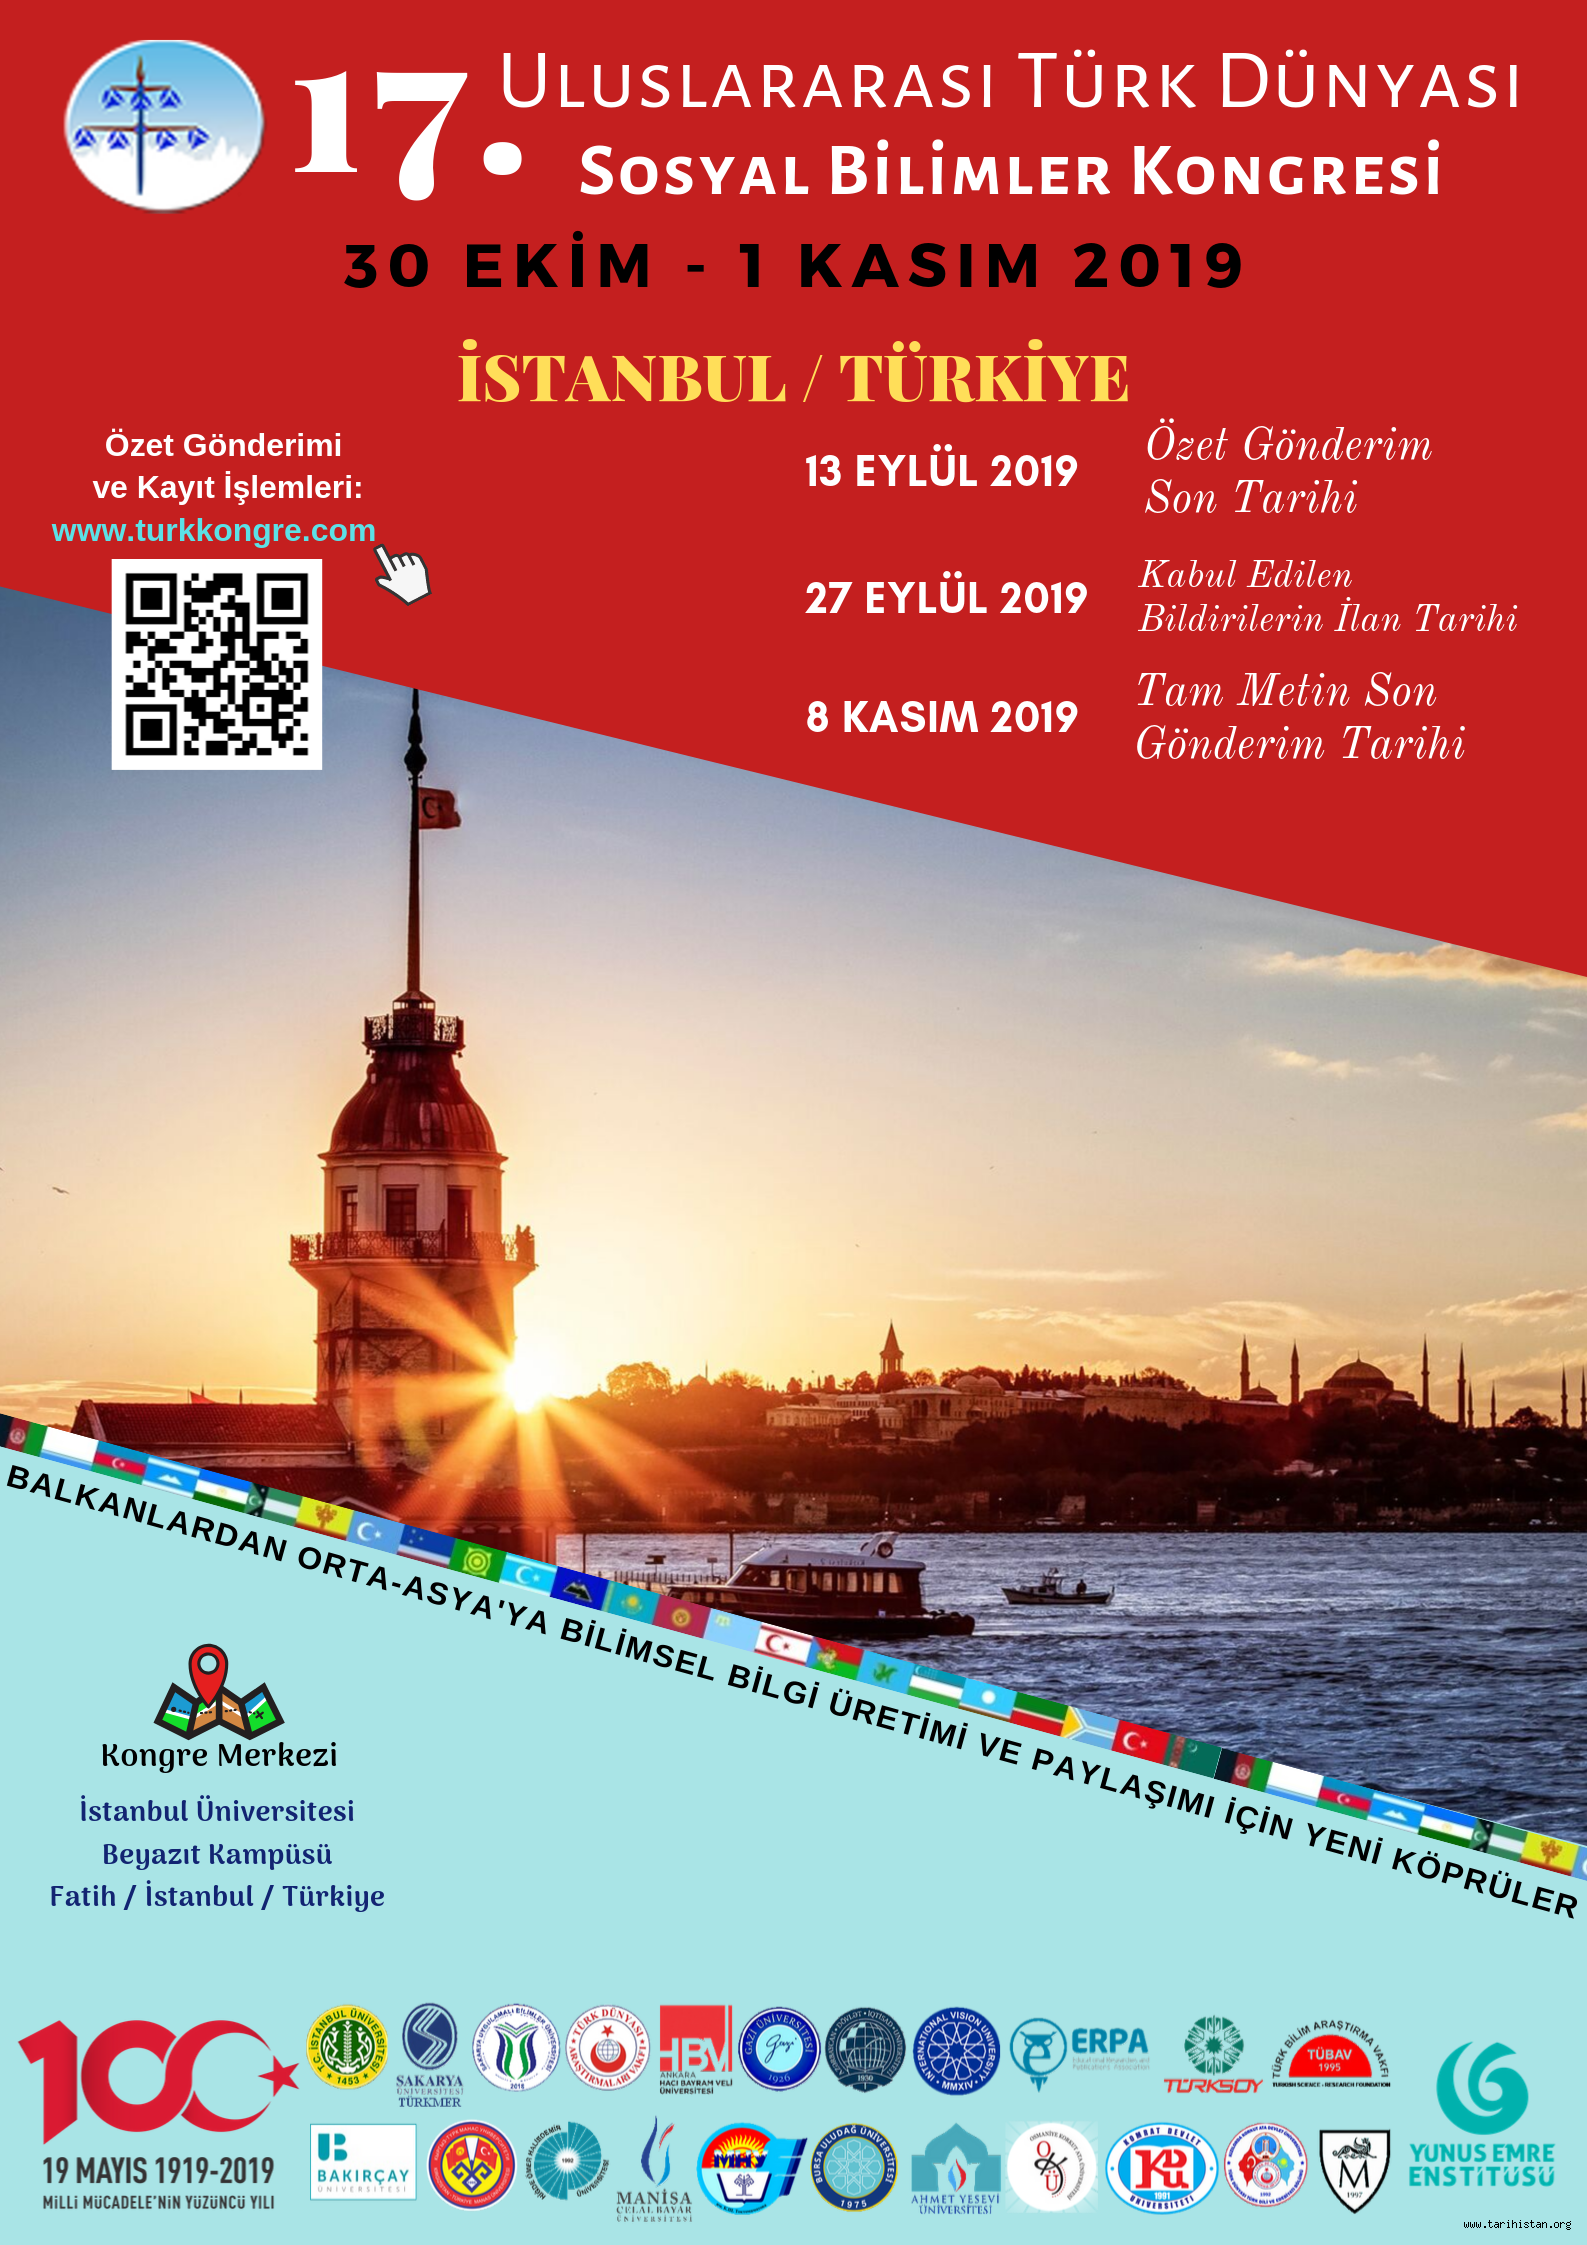 17. Uluslararası Türk Dünyası Sosyal Bilimler Kongresi başlıyor.